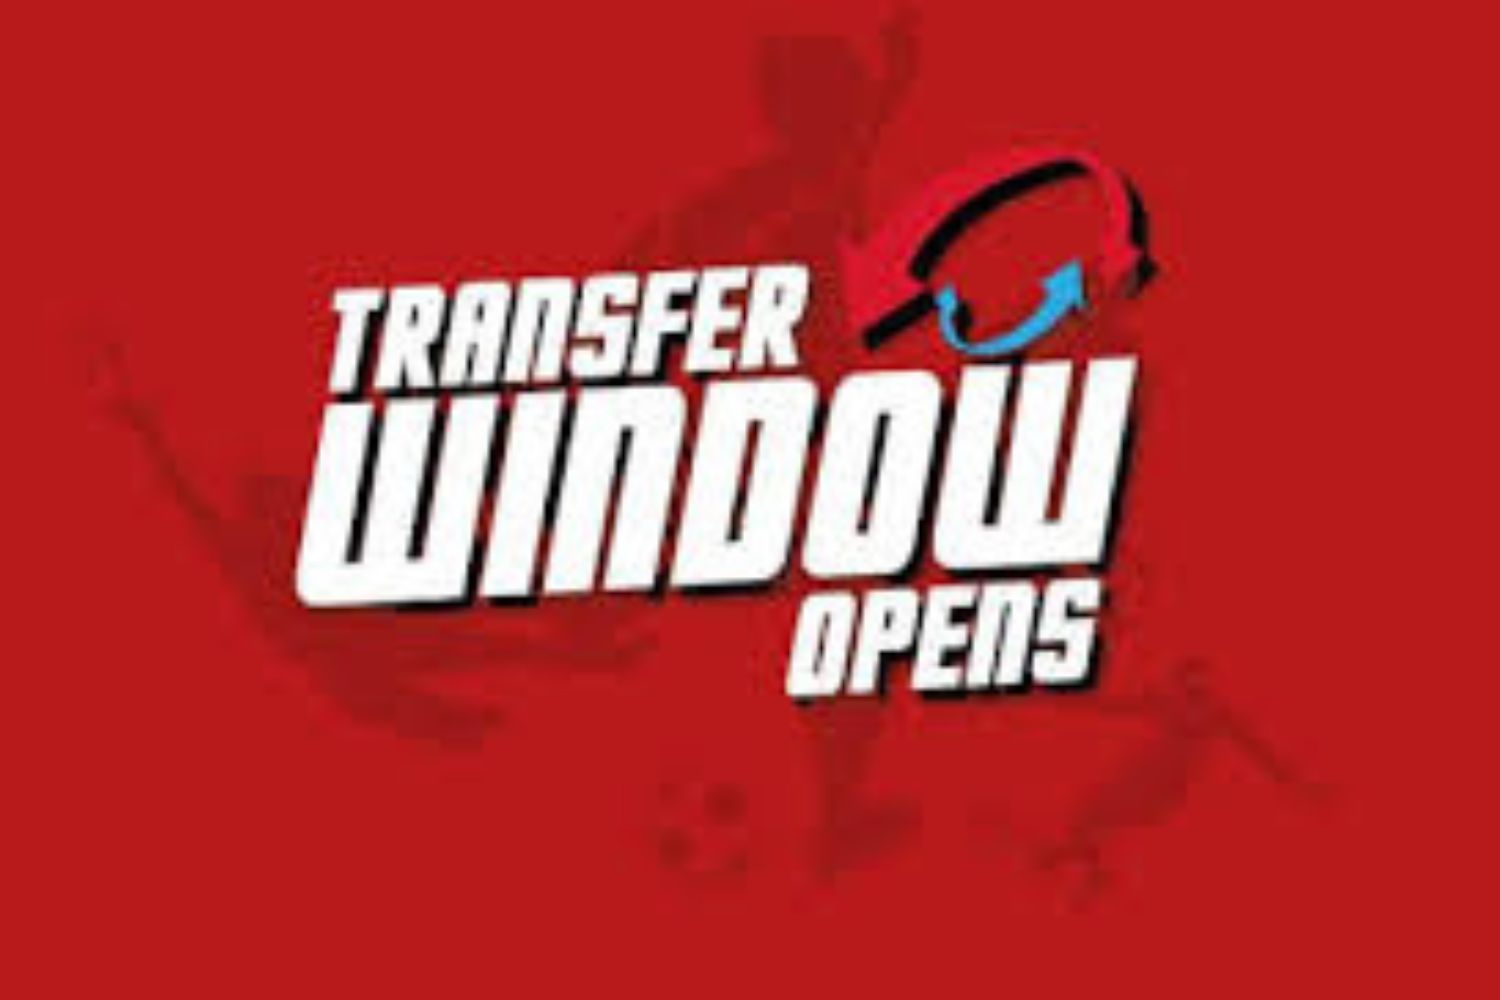 Transfer Window Opens